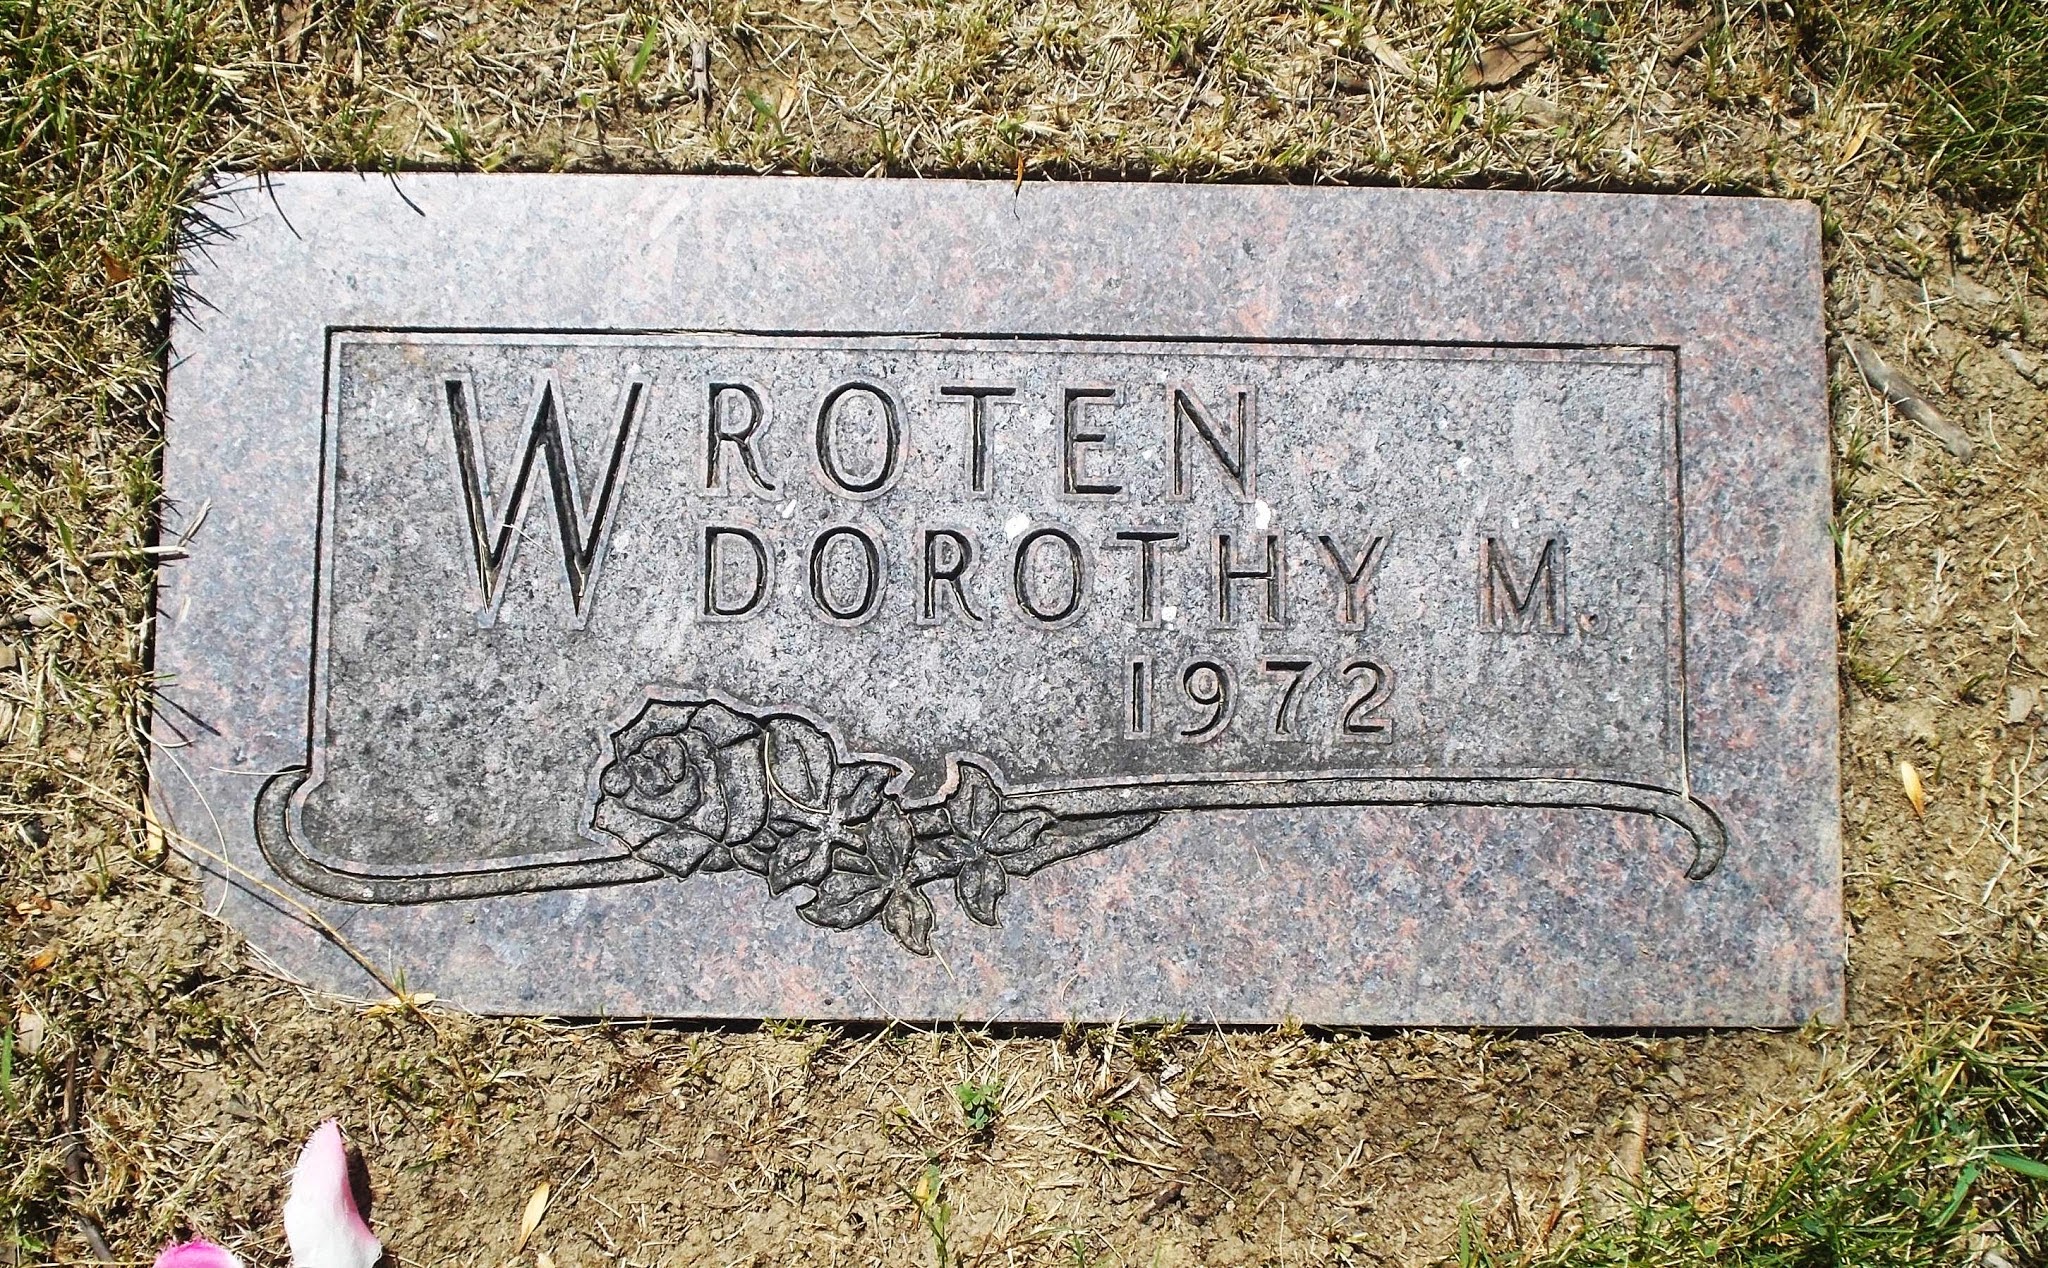 Dorothy M Wroten